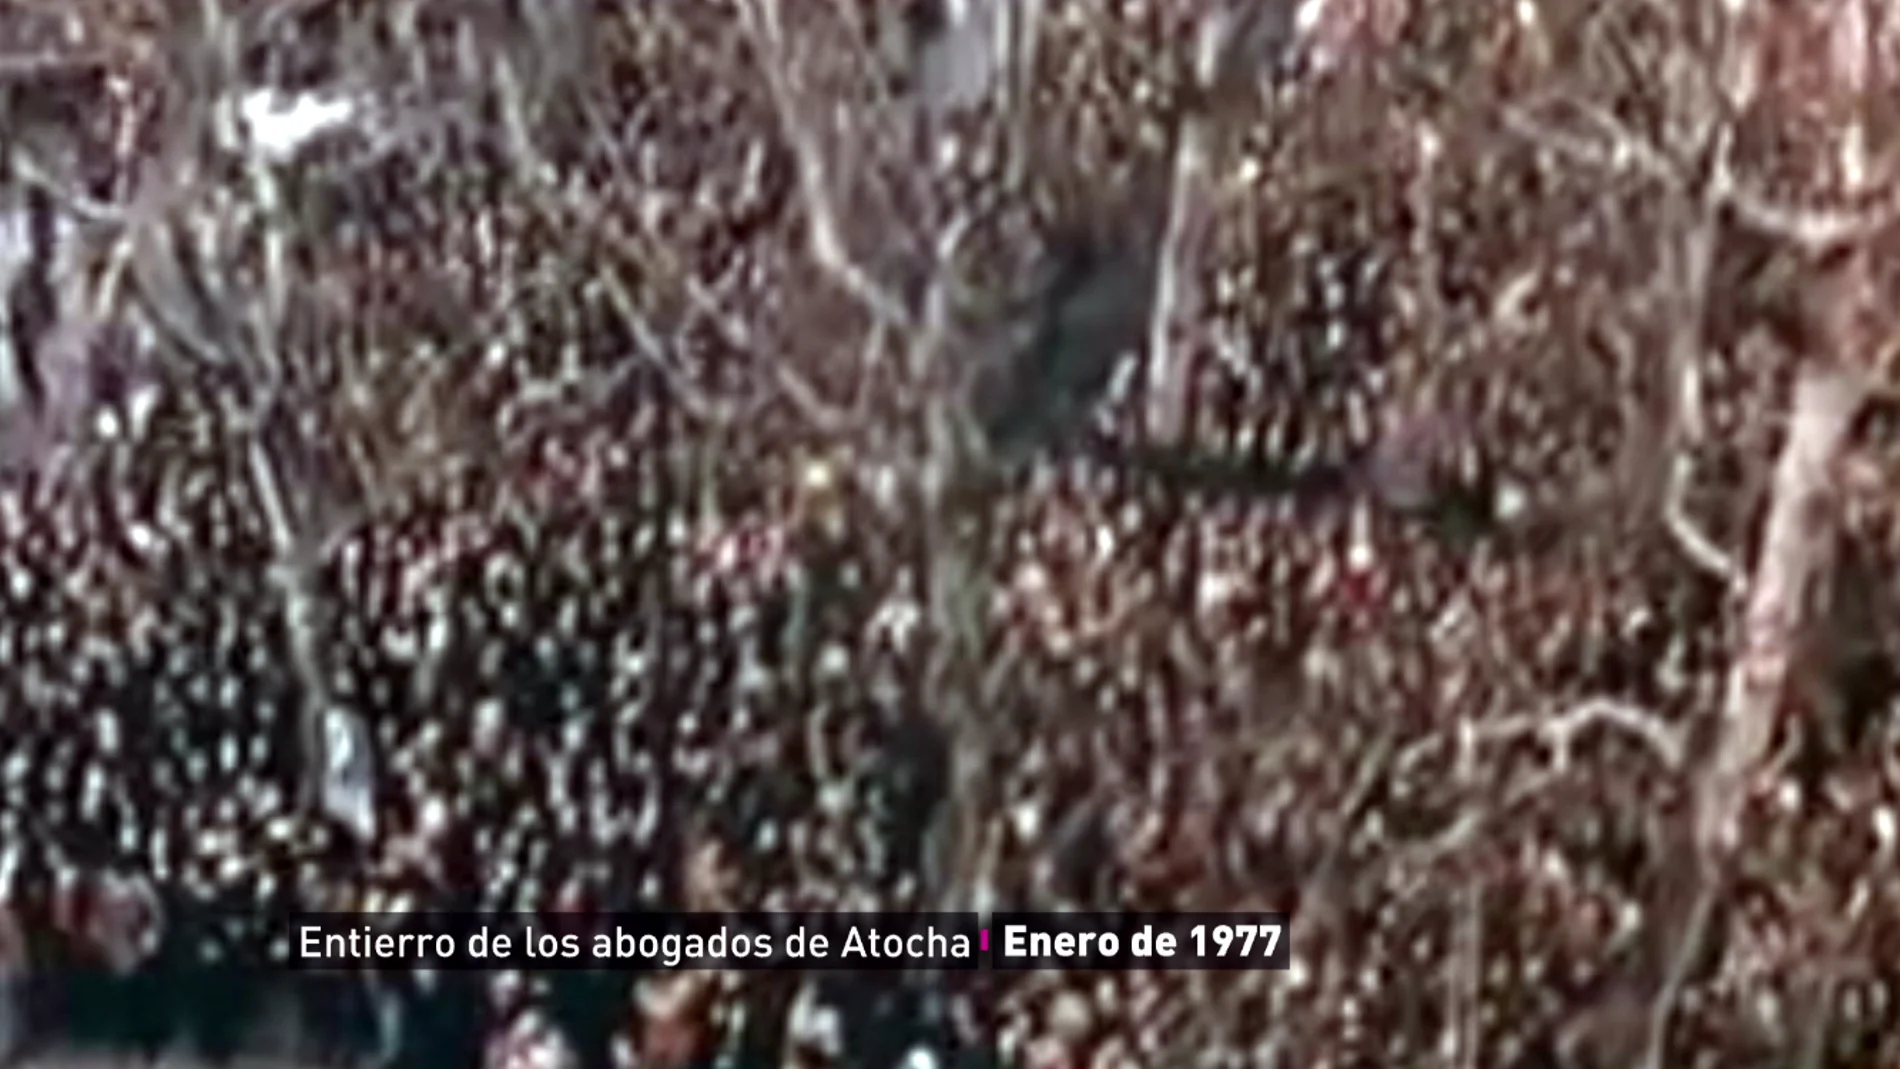 Silencio y puños en alto, así fue el funeral de los abogados asesinados en Atocha